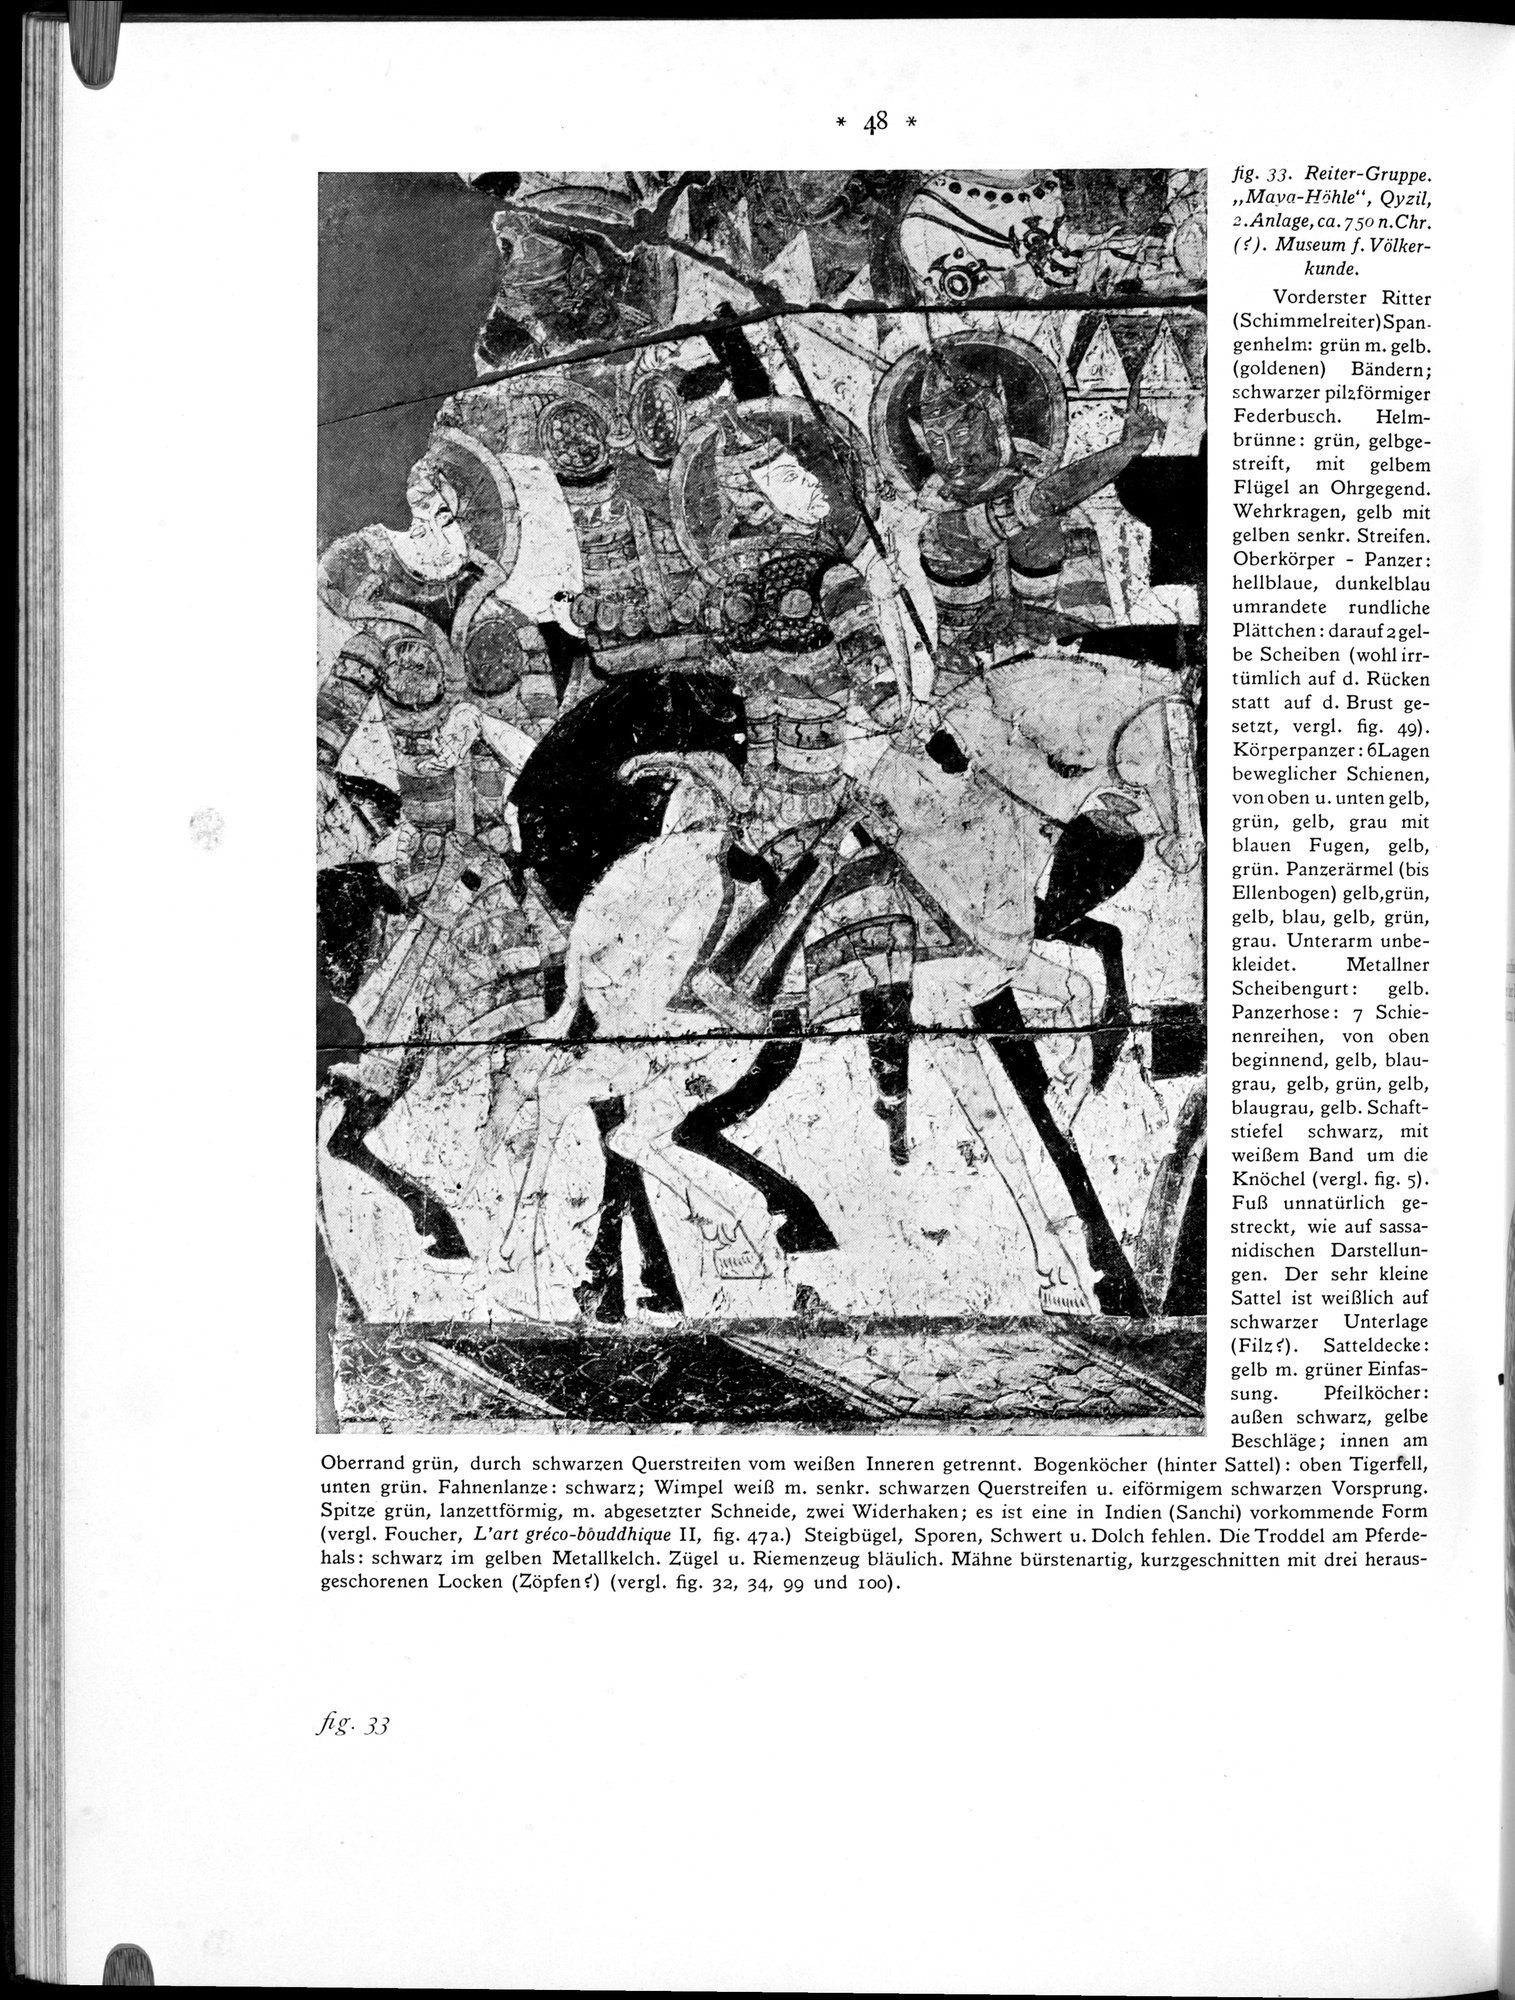 Bilderatlas zur Kunst und Kulturgeschichte Mittel-Asiens : vol.1 / Page 52 (Grayscale High Resolution Image)